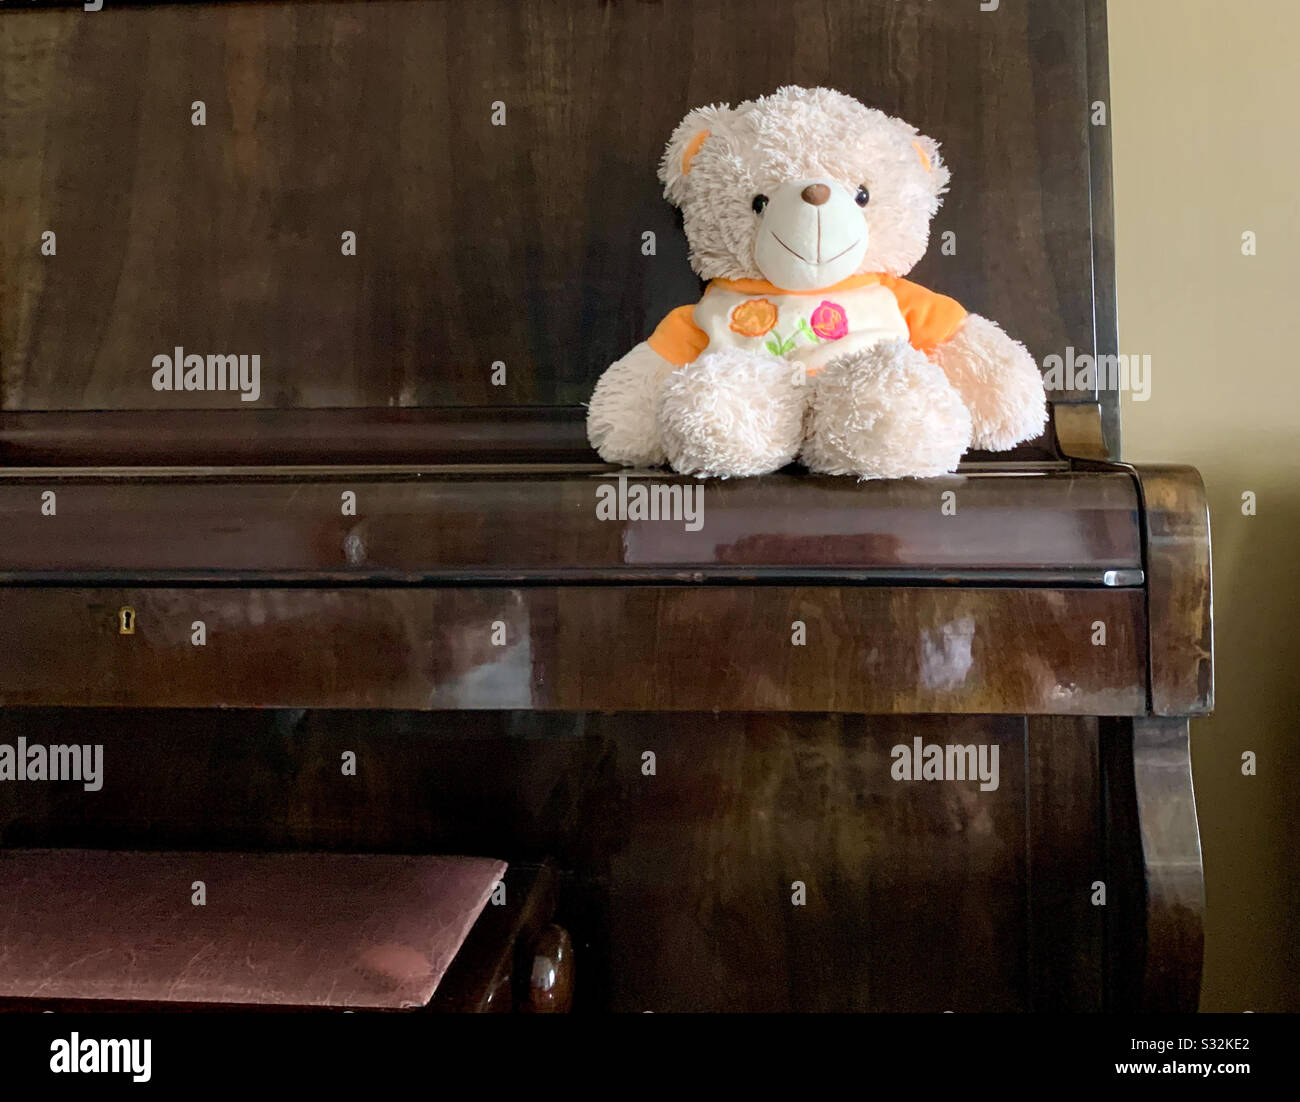 Piano and teddy bear Stock Photo